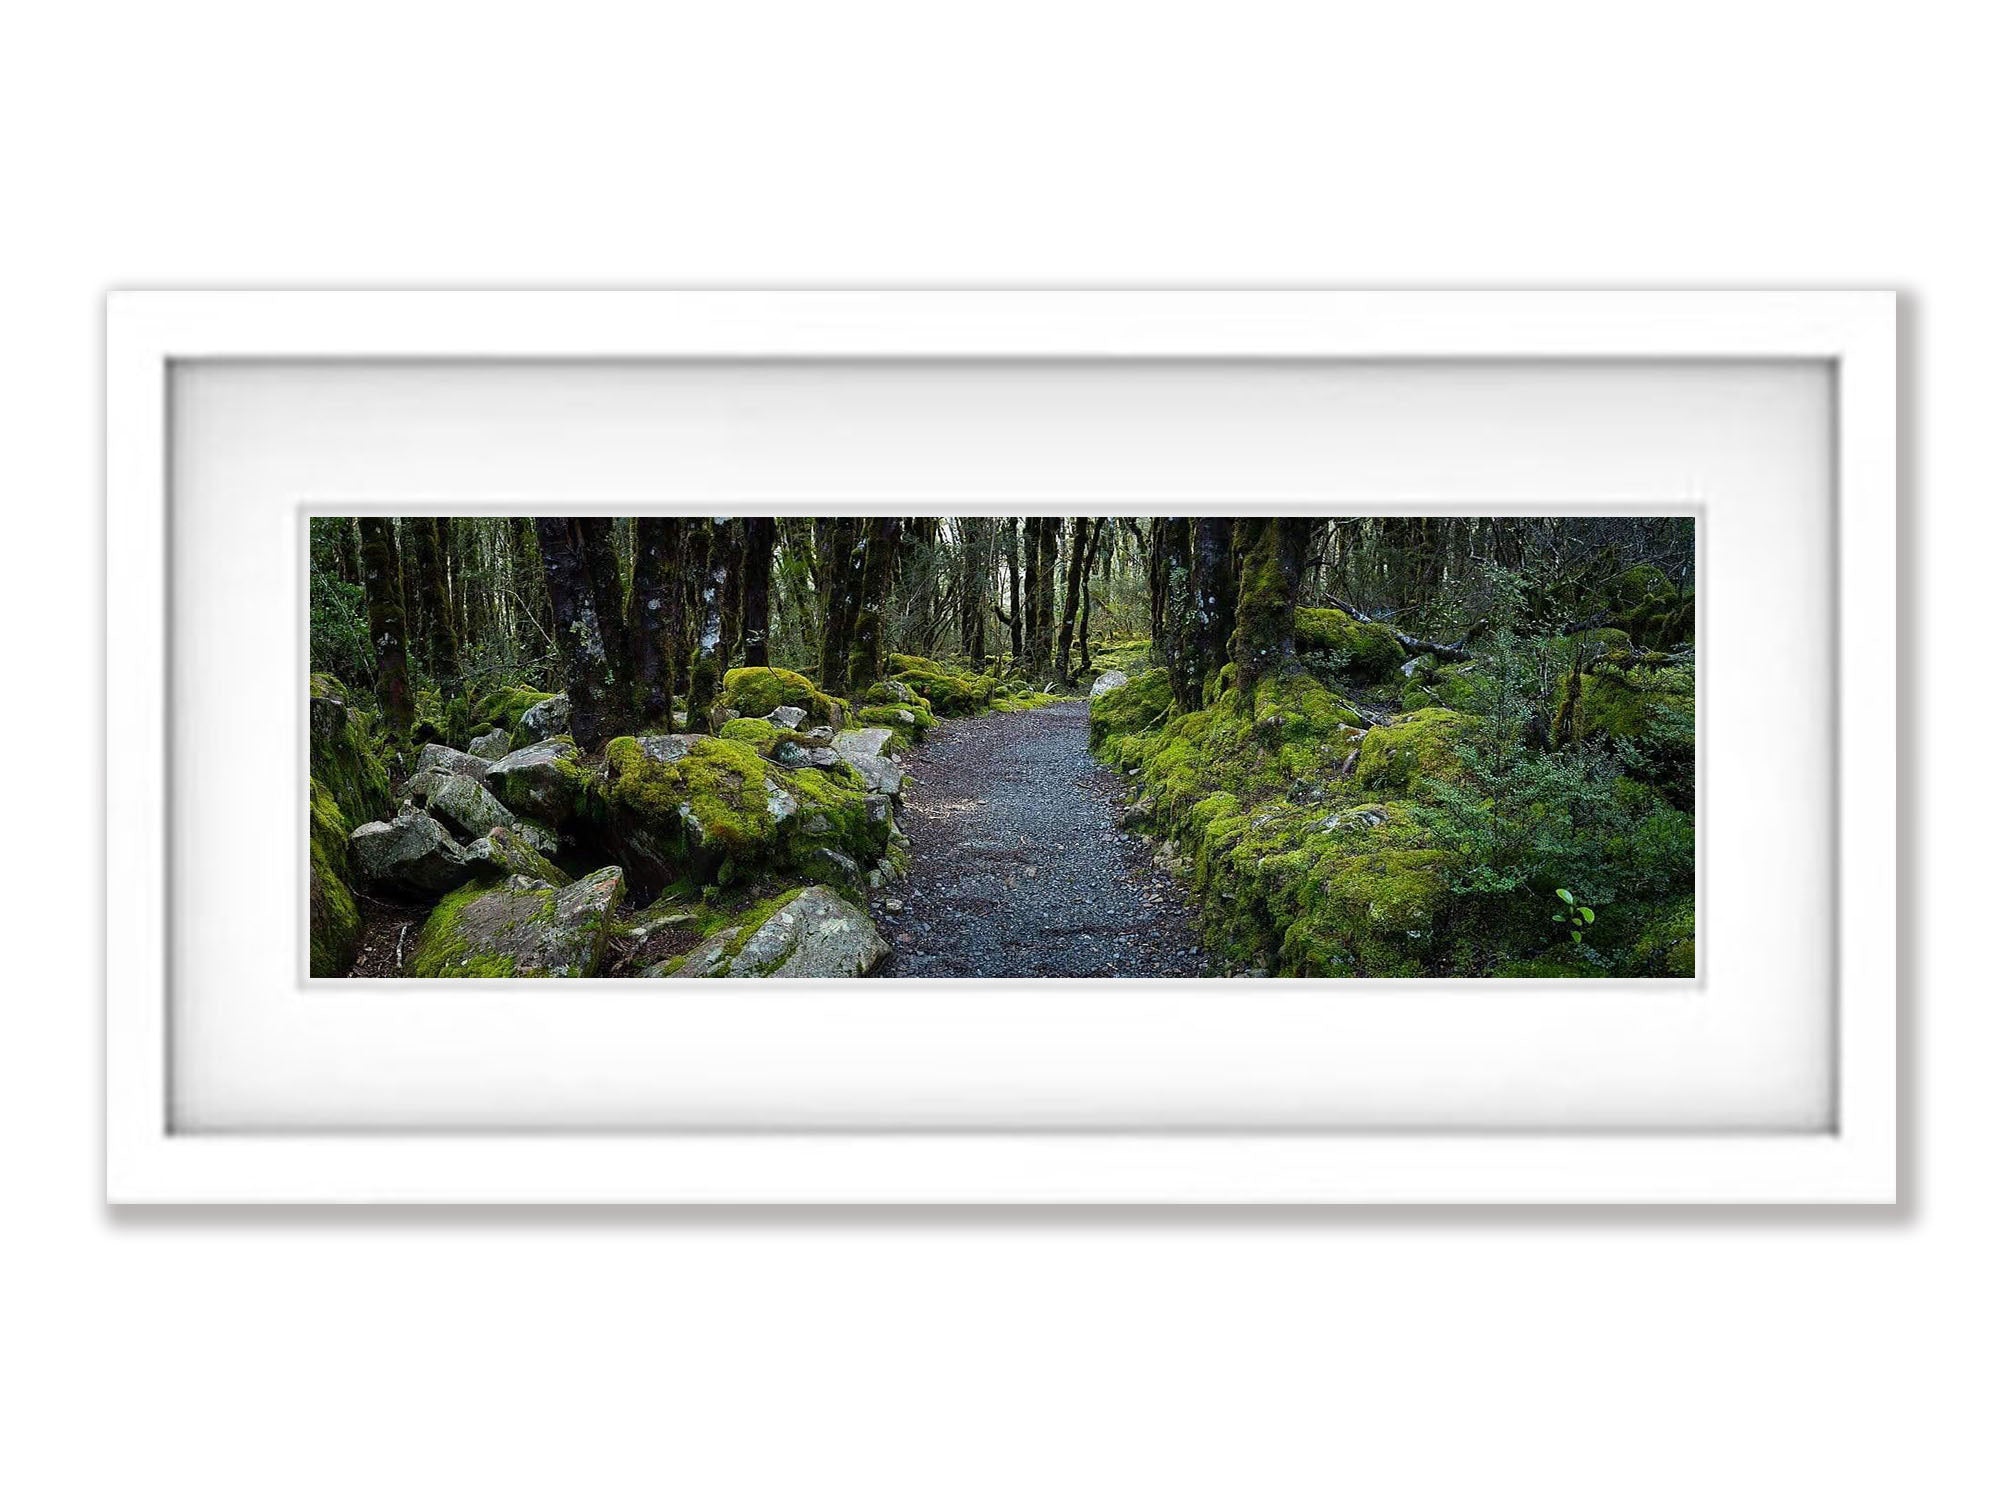 Arthurs Pass Forest - New Zealand